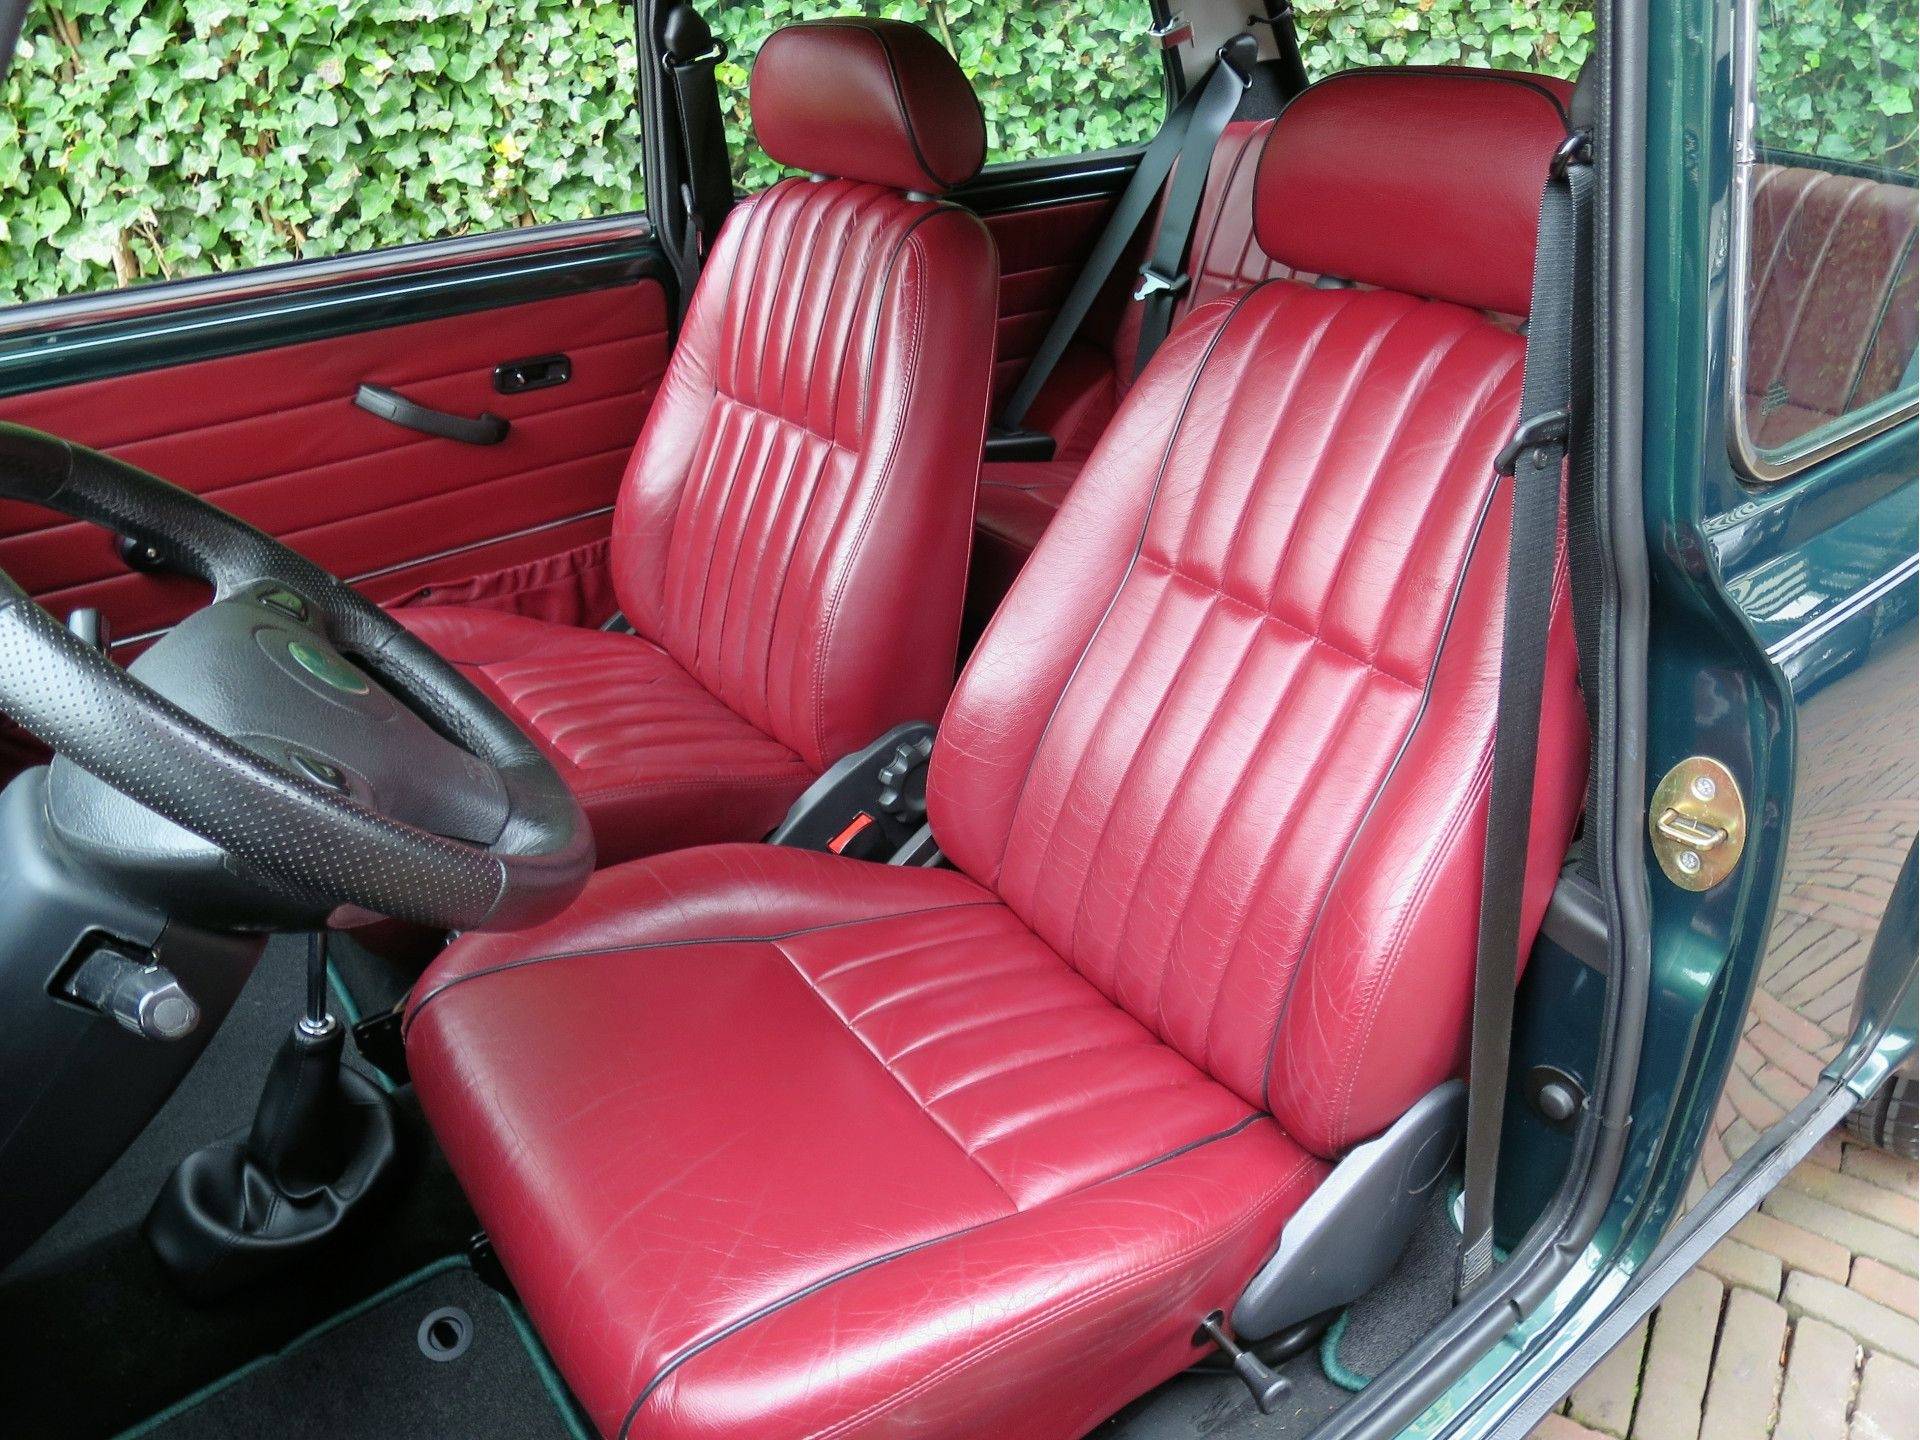 MINI Cooper Sport 1.3 MPI met leder interieur, houten dash en 13" velgen - 3/50